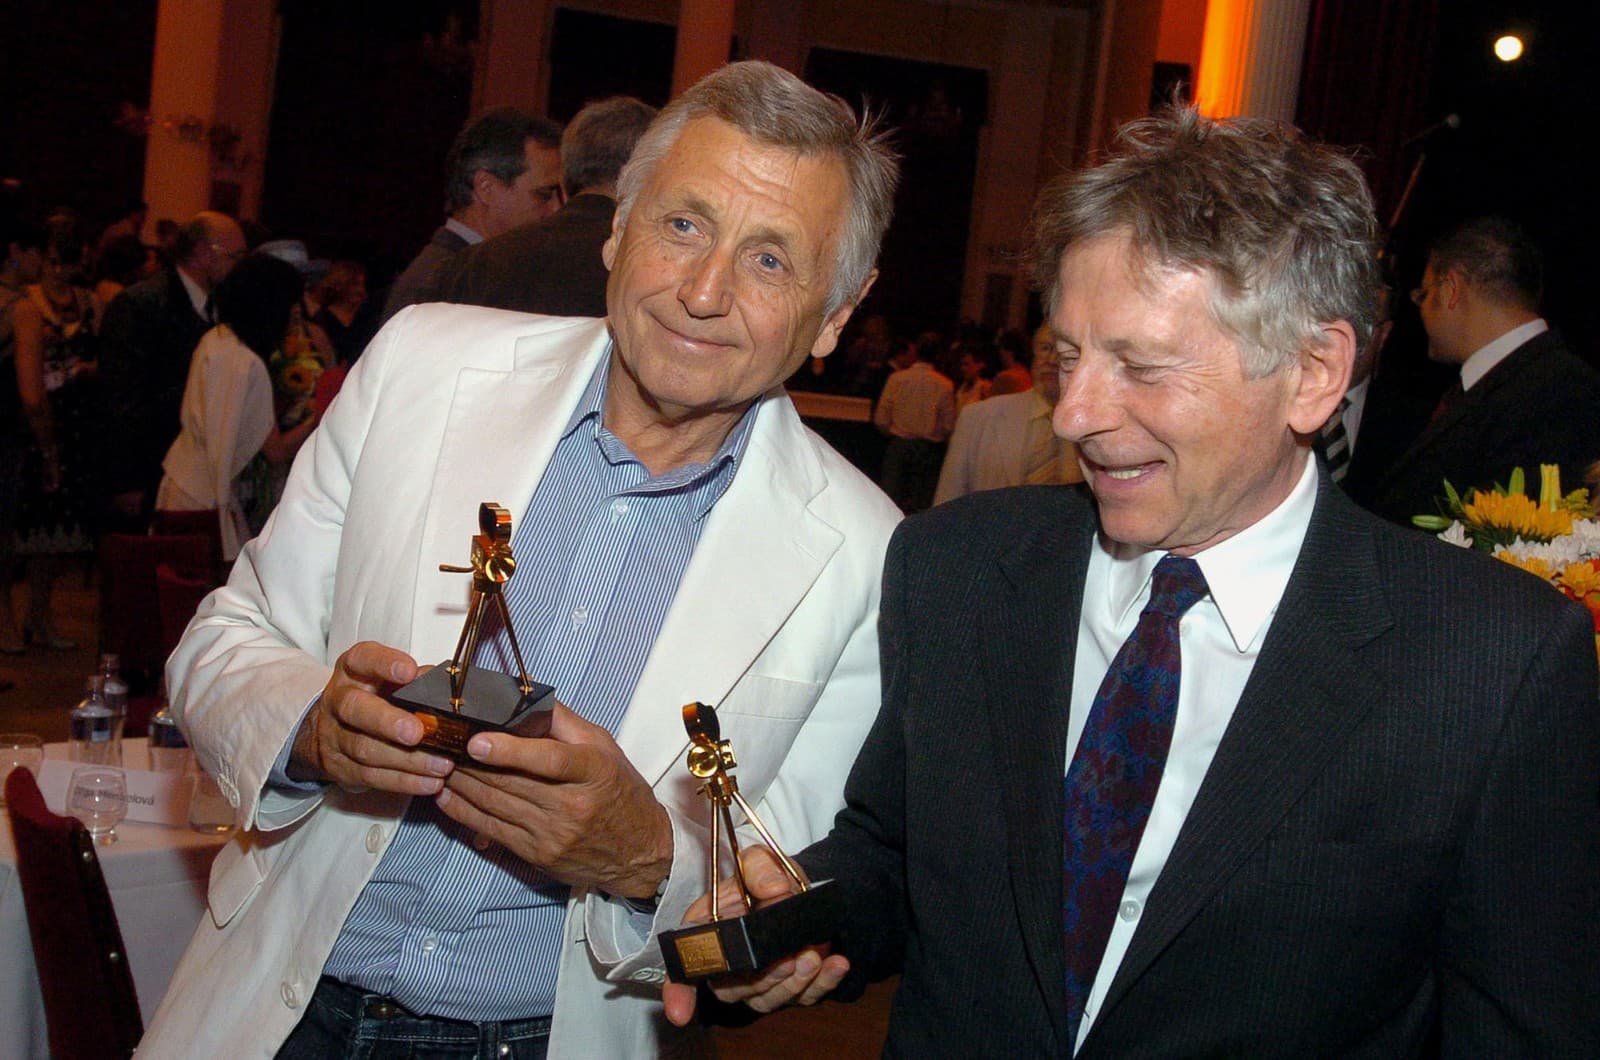 Ocenení režiséri Roman Polanski (vpravo) a Jiří Menzel s cenou Zlatá kamera  30. júna 2007 počas slávnostného vyhlásenia výsledkov 15. ročníka medzinárodného filmového festivalu Artfilm v Trenčianskych Tepliciach.(Zdroj: TASR - Radovan Stoklasa)